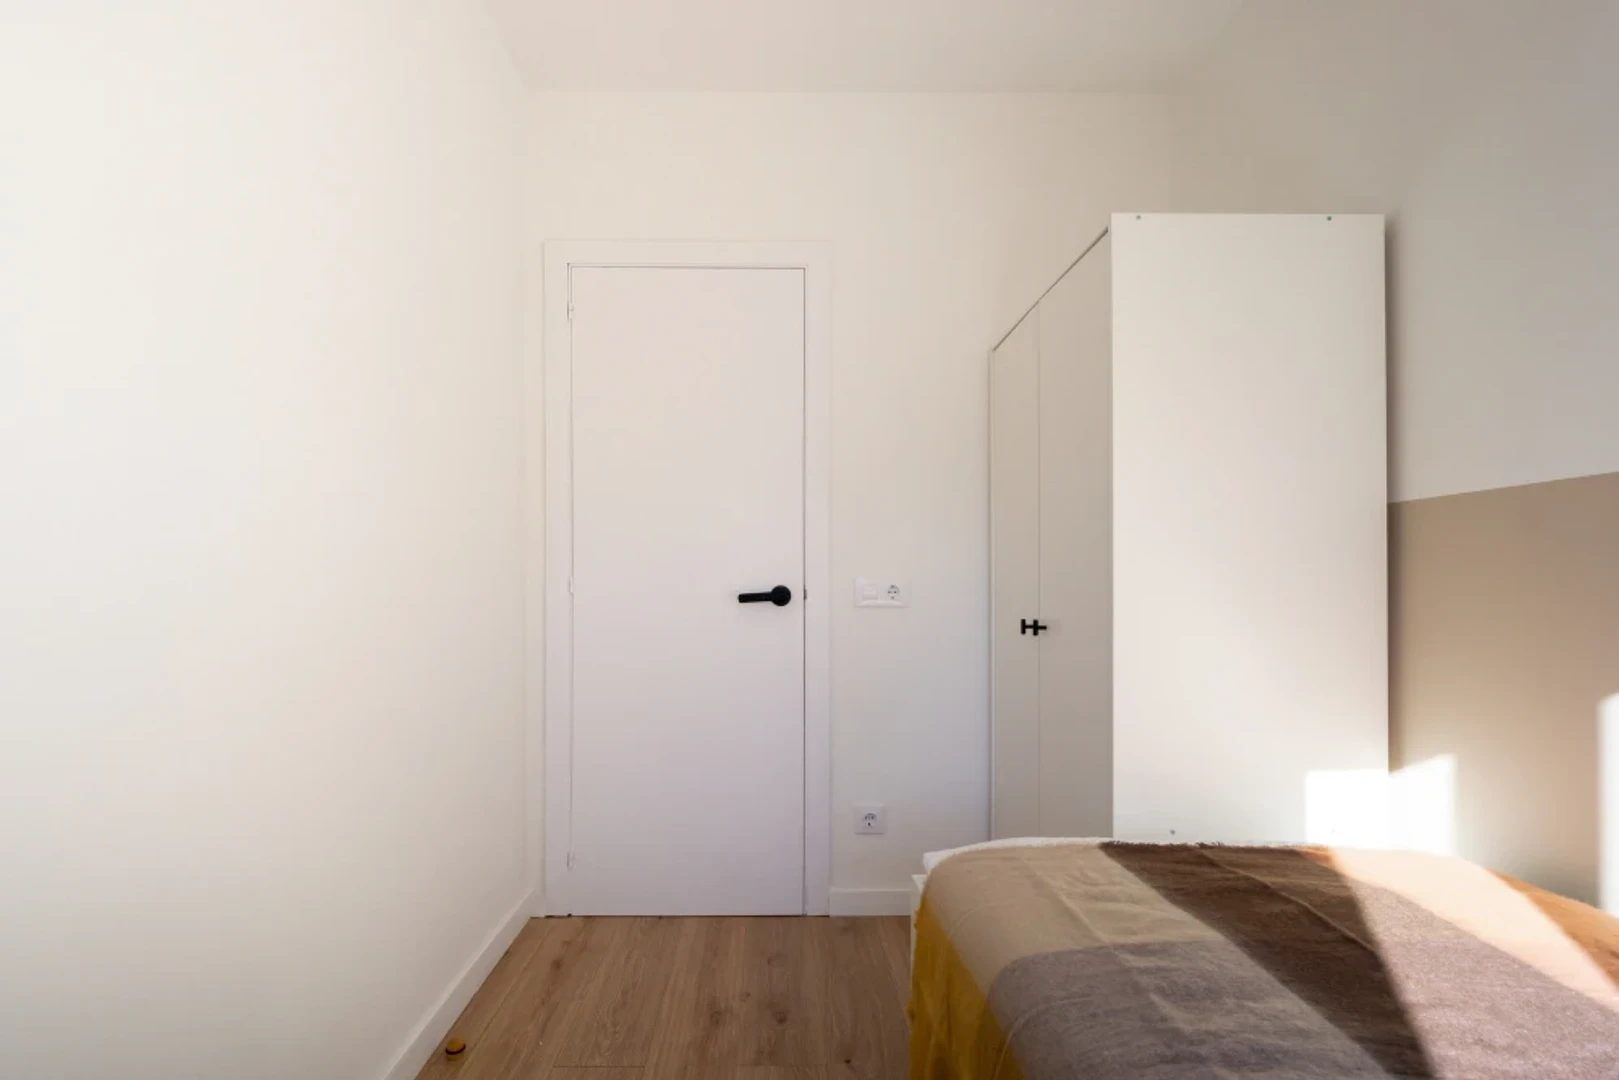 Girona de çift kişilik yataklı kiralık oda